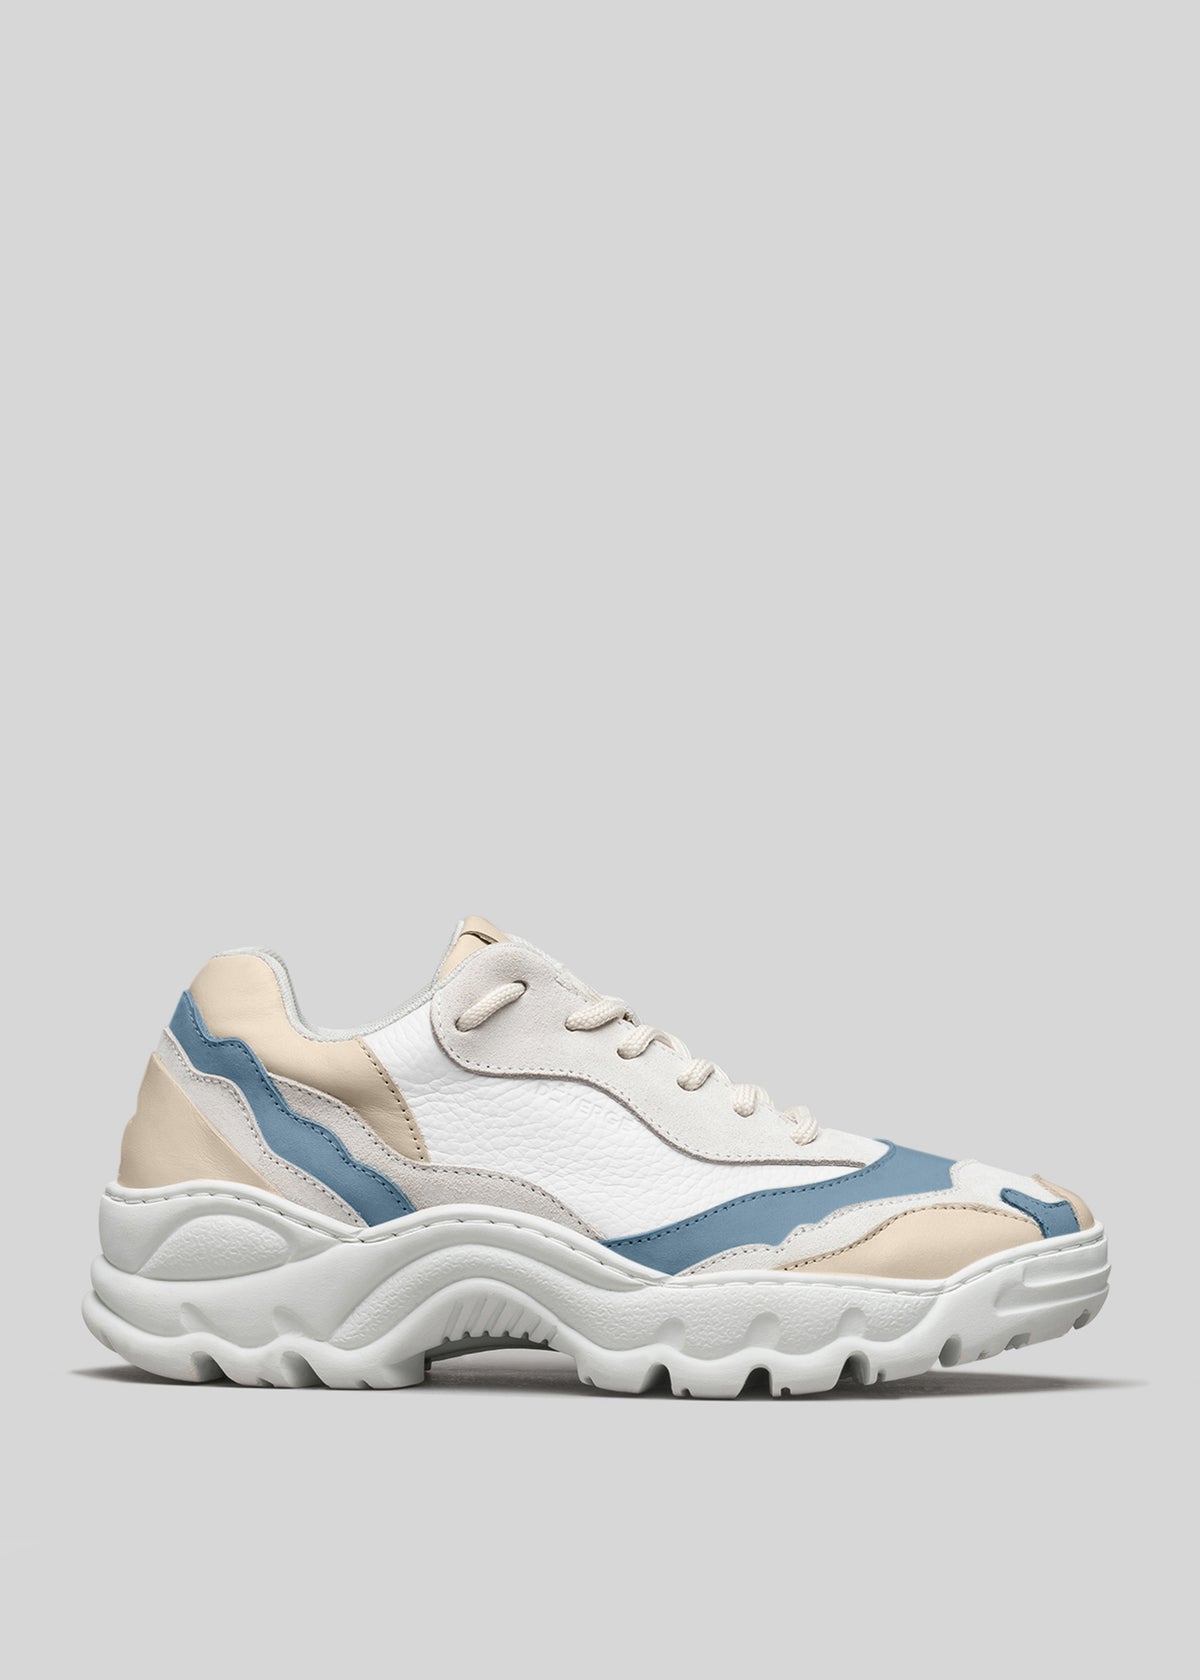 Sneaker bassa L0009 MAYATHE bianca, blu e beige con suola spessa, su sfondo grigio.